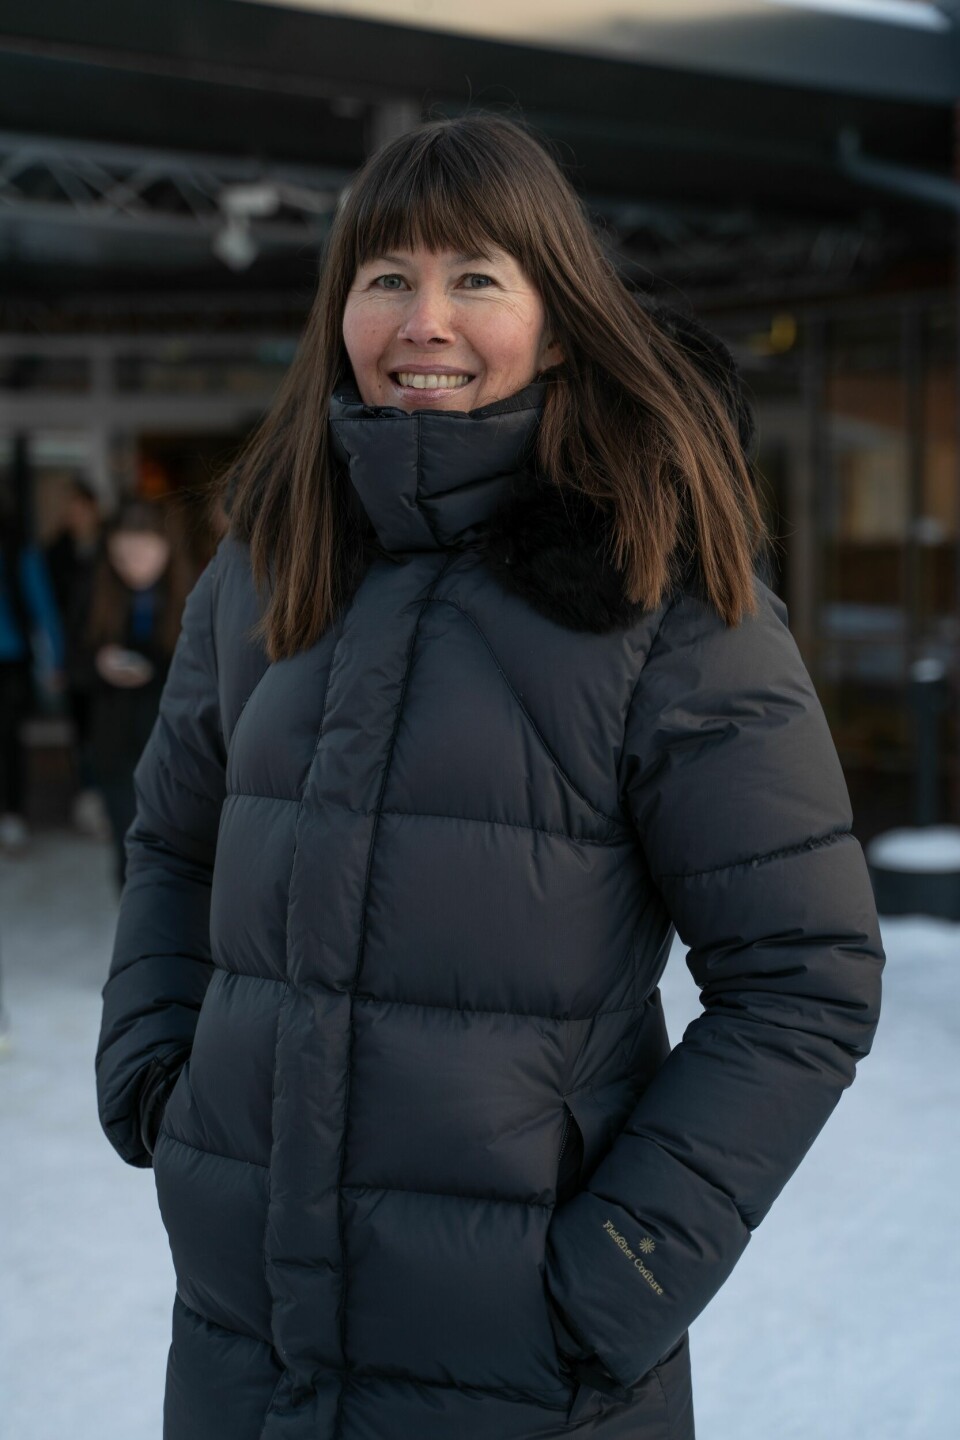 – Det er en sterkt økende publikumsinteresse for samisk film, sier medieprofessor Stine Sand.